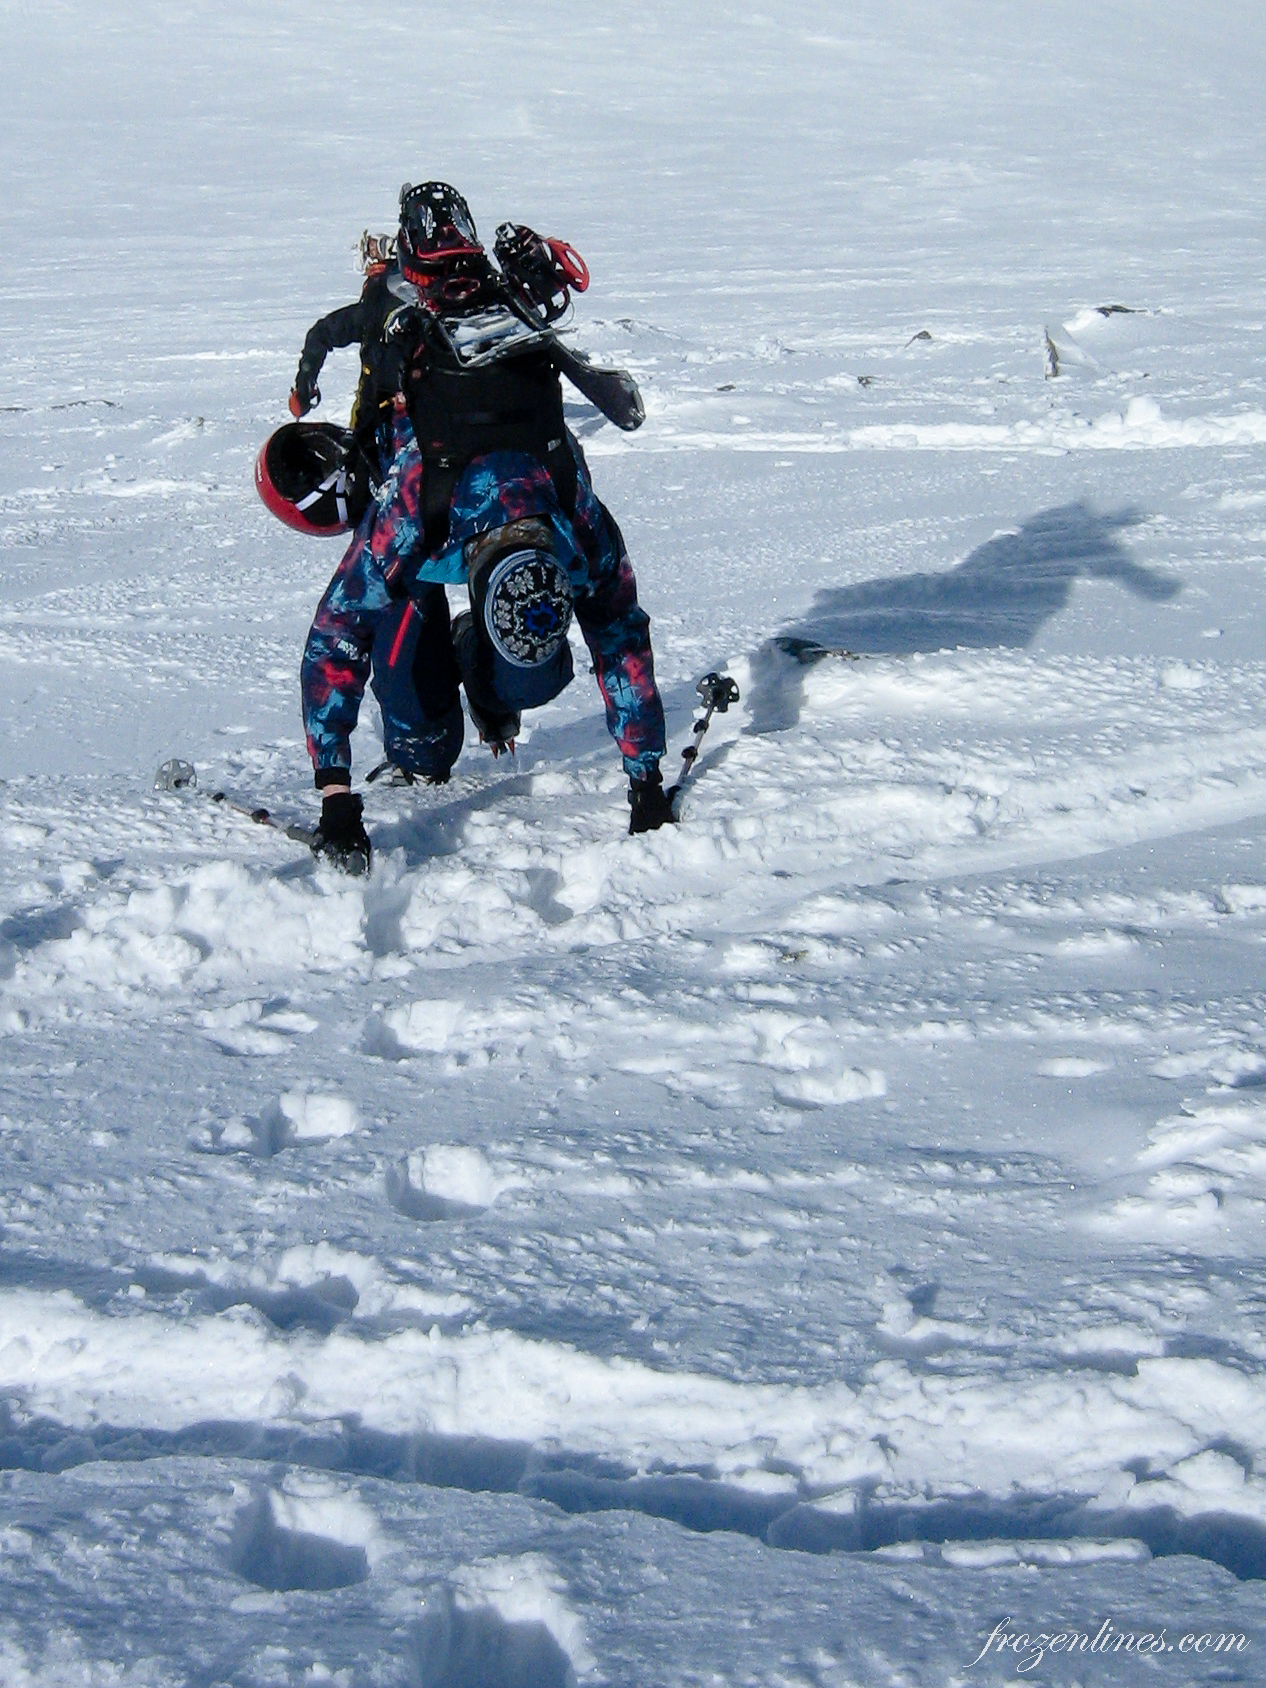 Soms bereik je de limiet van wat je omhoog kunt skinnen en moet het materiaal op je rug. In deze steile wand gaat het verder met de ski's op de rug en stijgijzers aan de voeten.